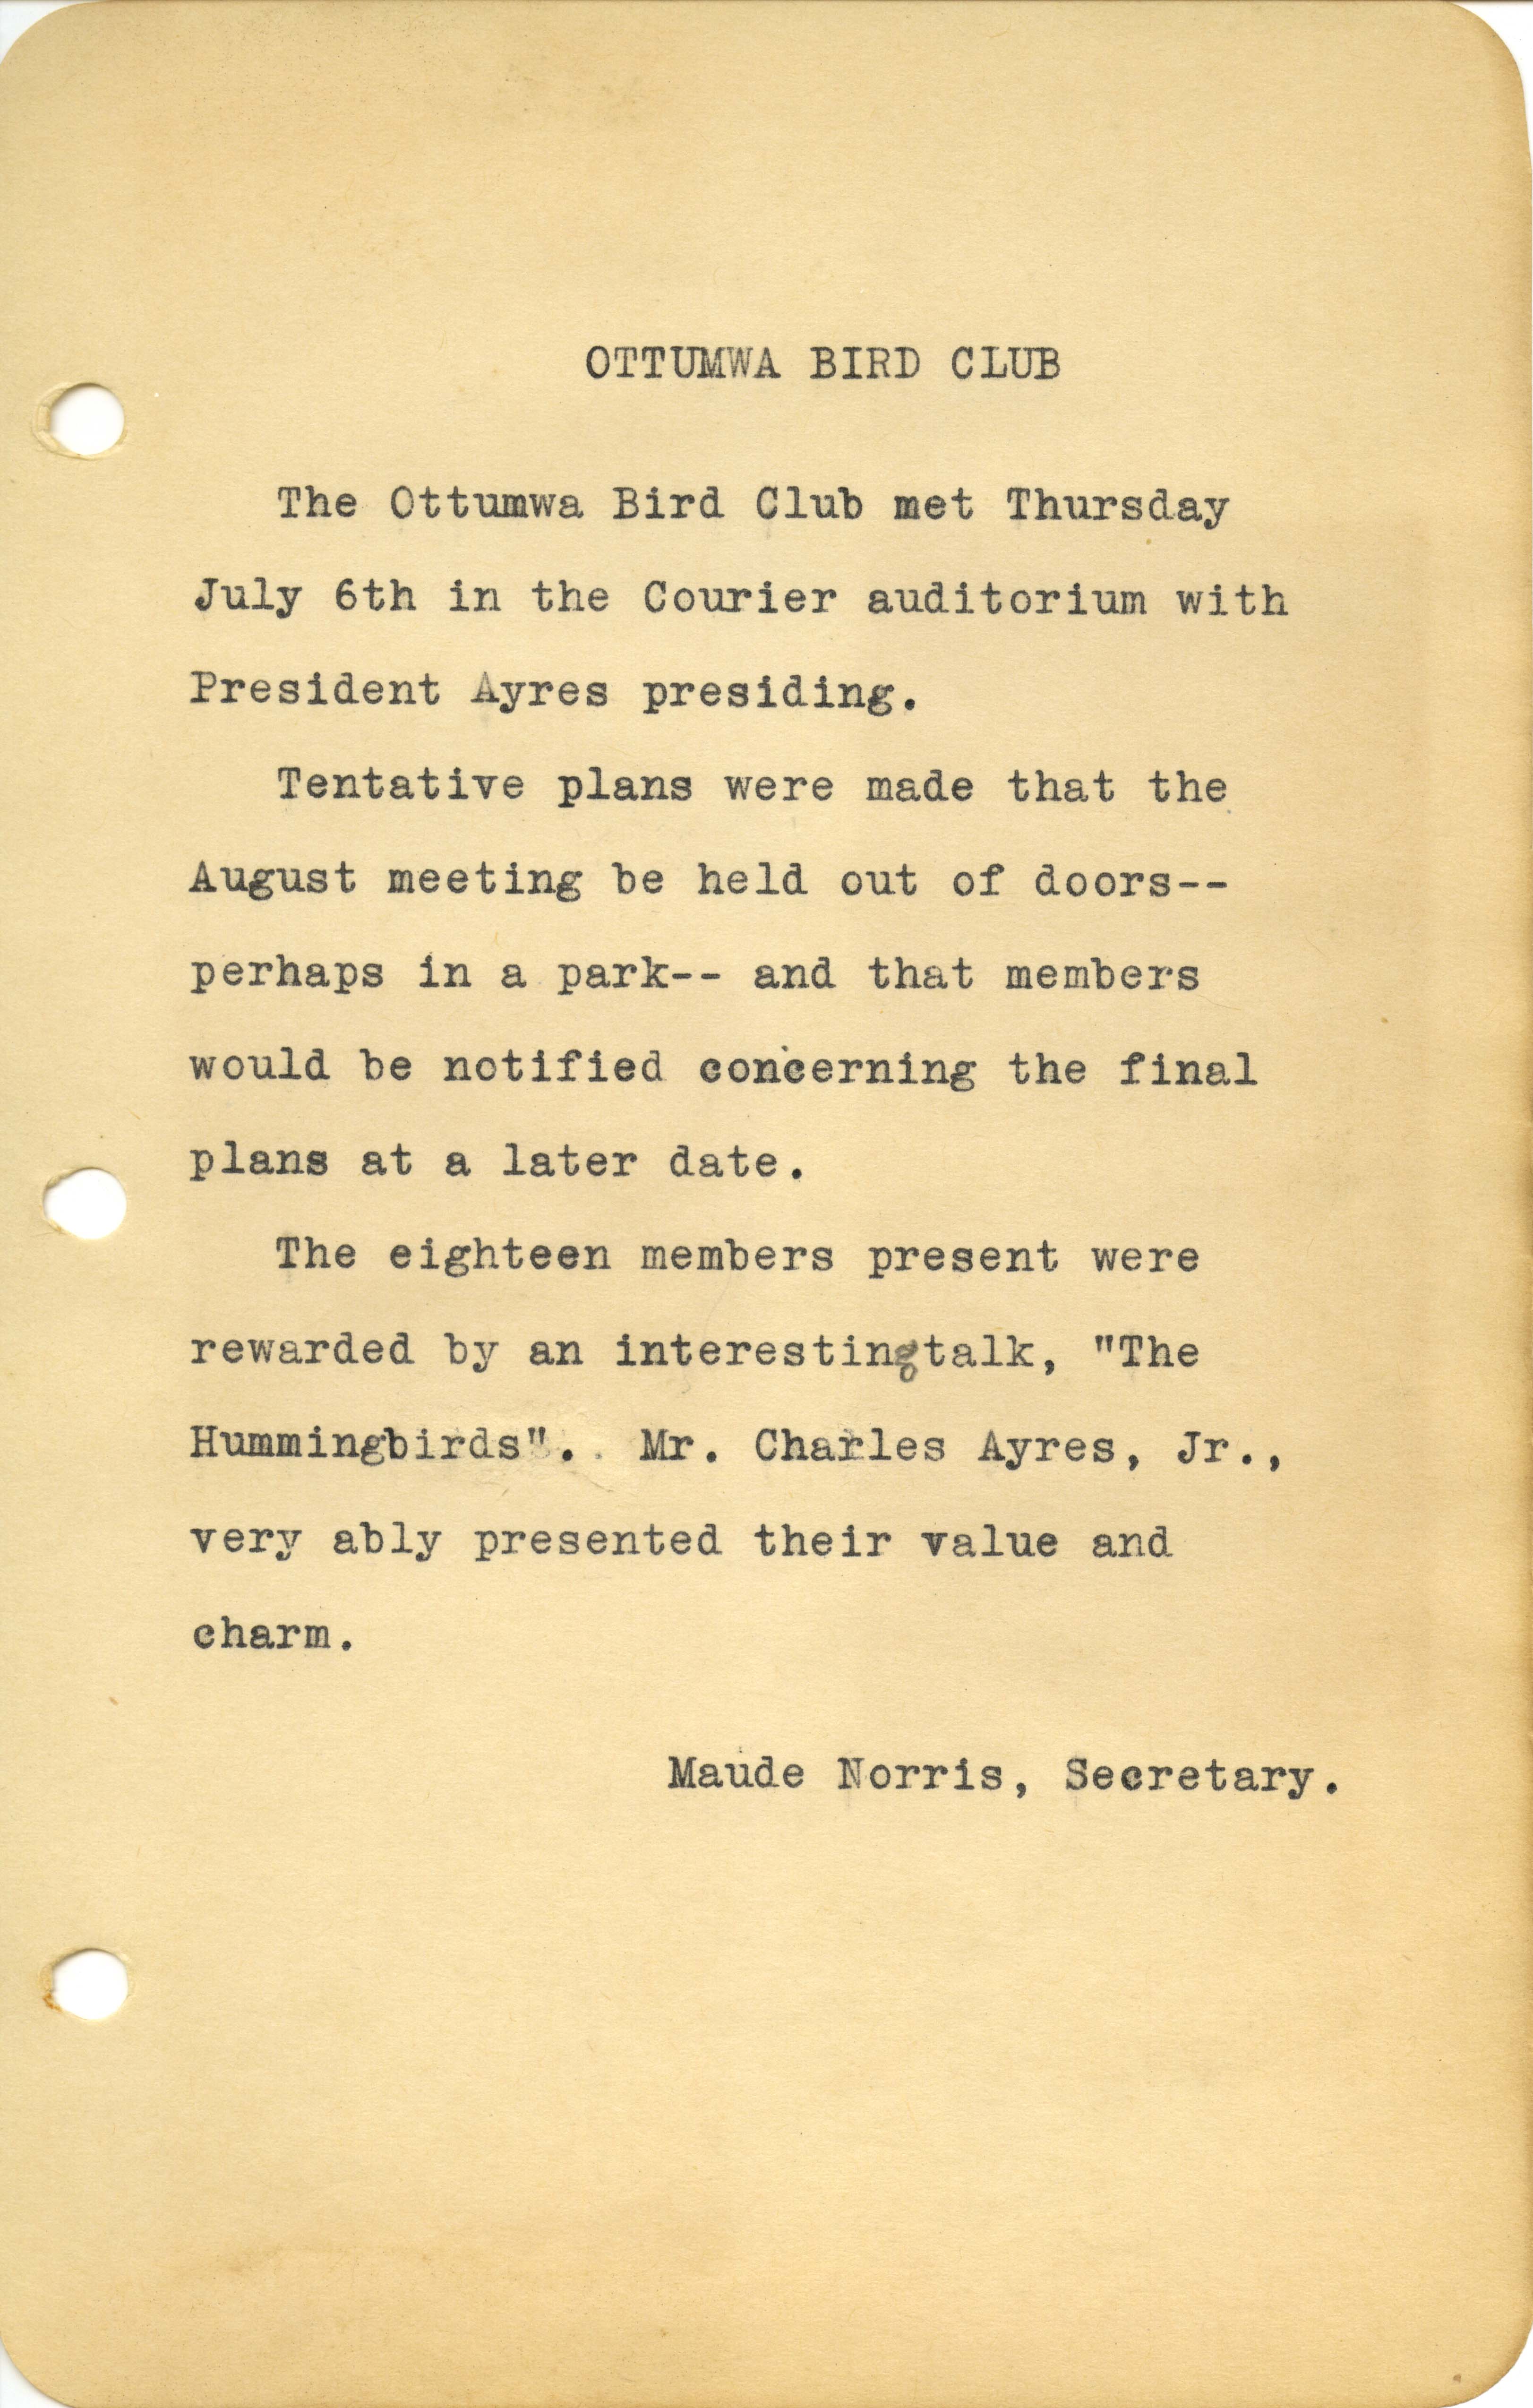  Ottumwa Bird Club meeting minutes, July 6, 1944